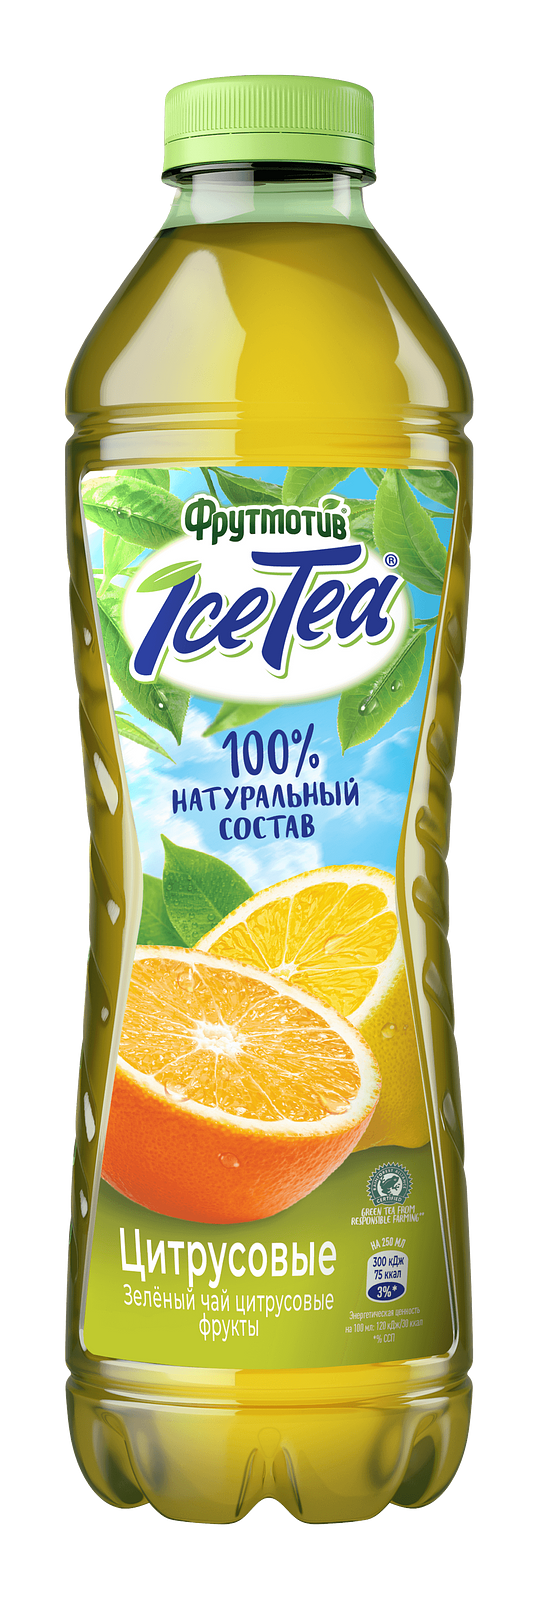 Упаковка из 6 штук Холодный чай ICE TEA зеленый Цитрусовые фрукты 0,5л ПЭТ